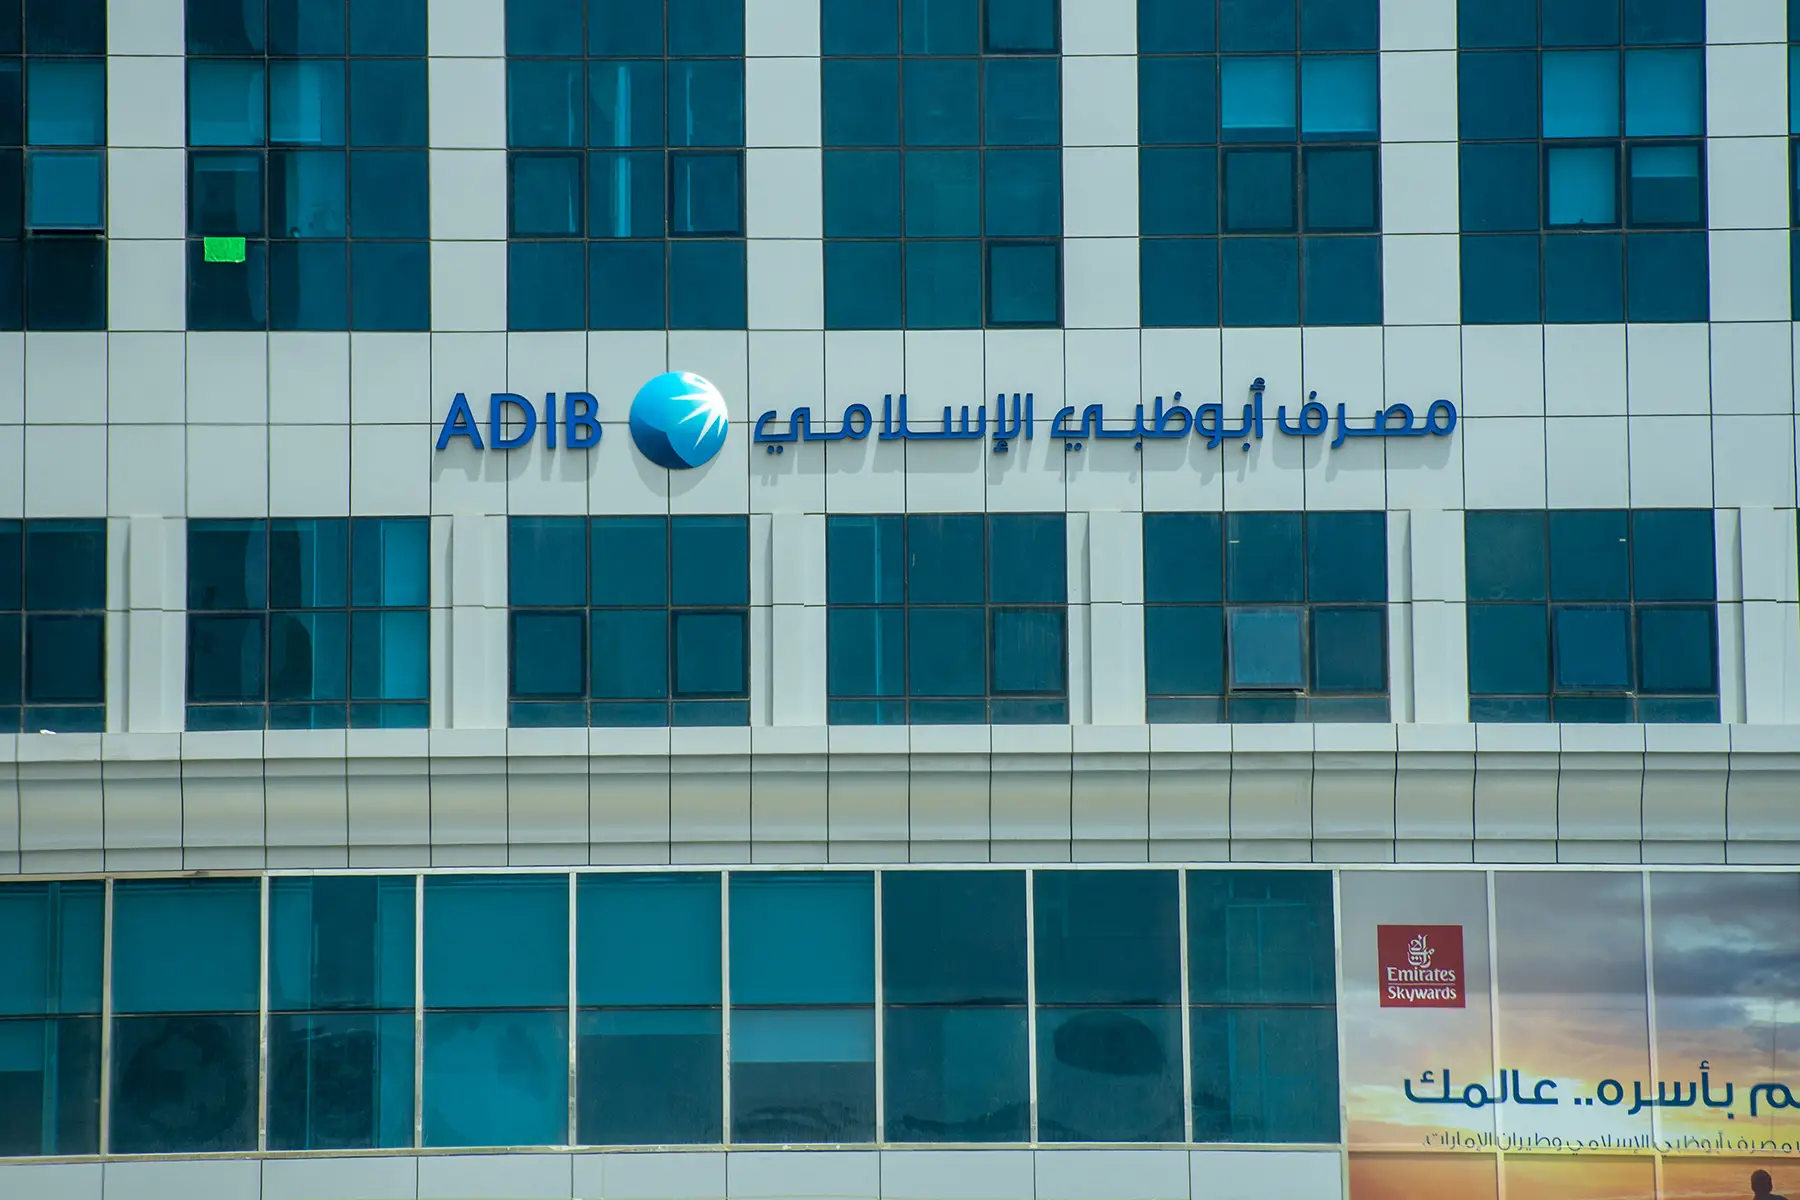 Abu Dhabi Islamic Bank in the UAE